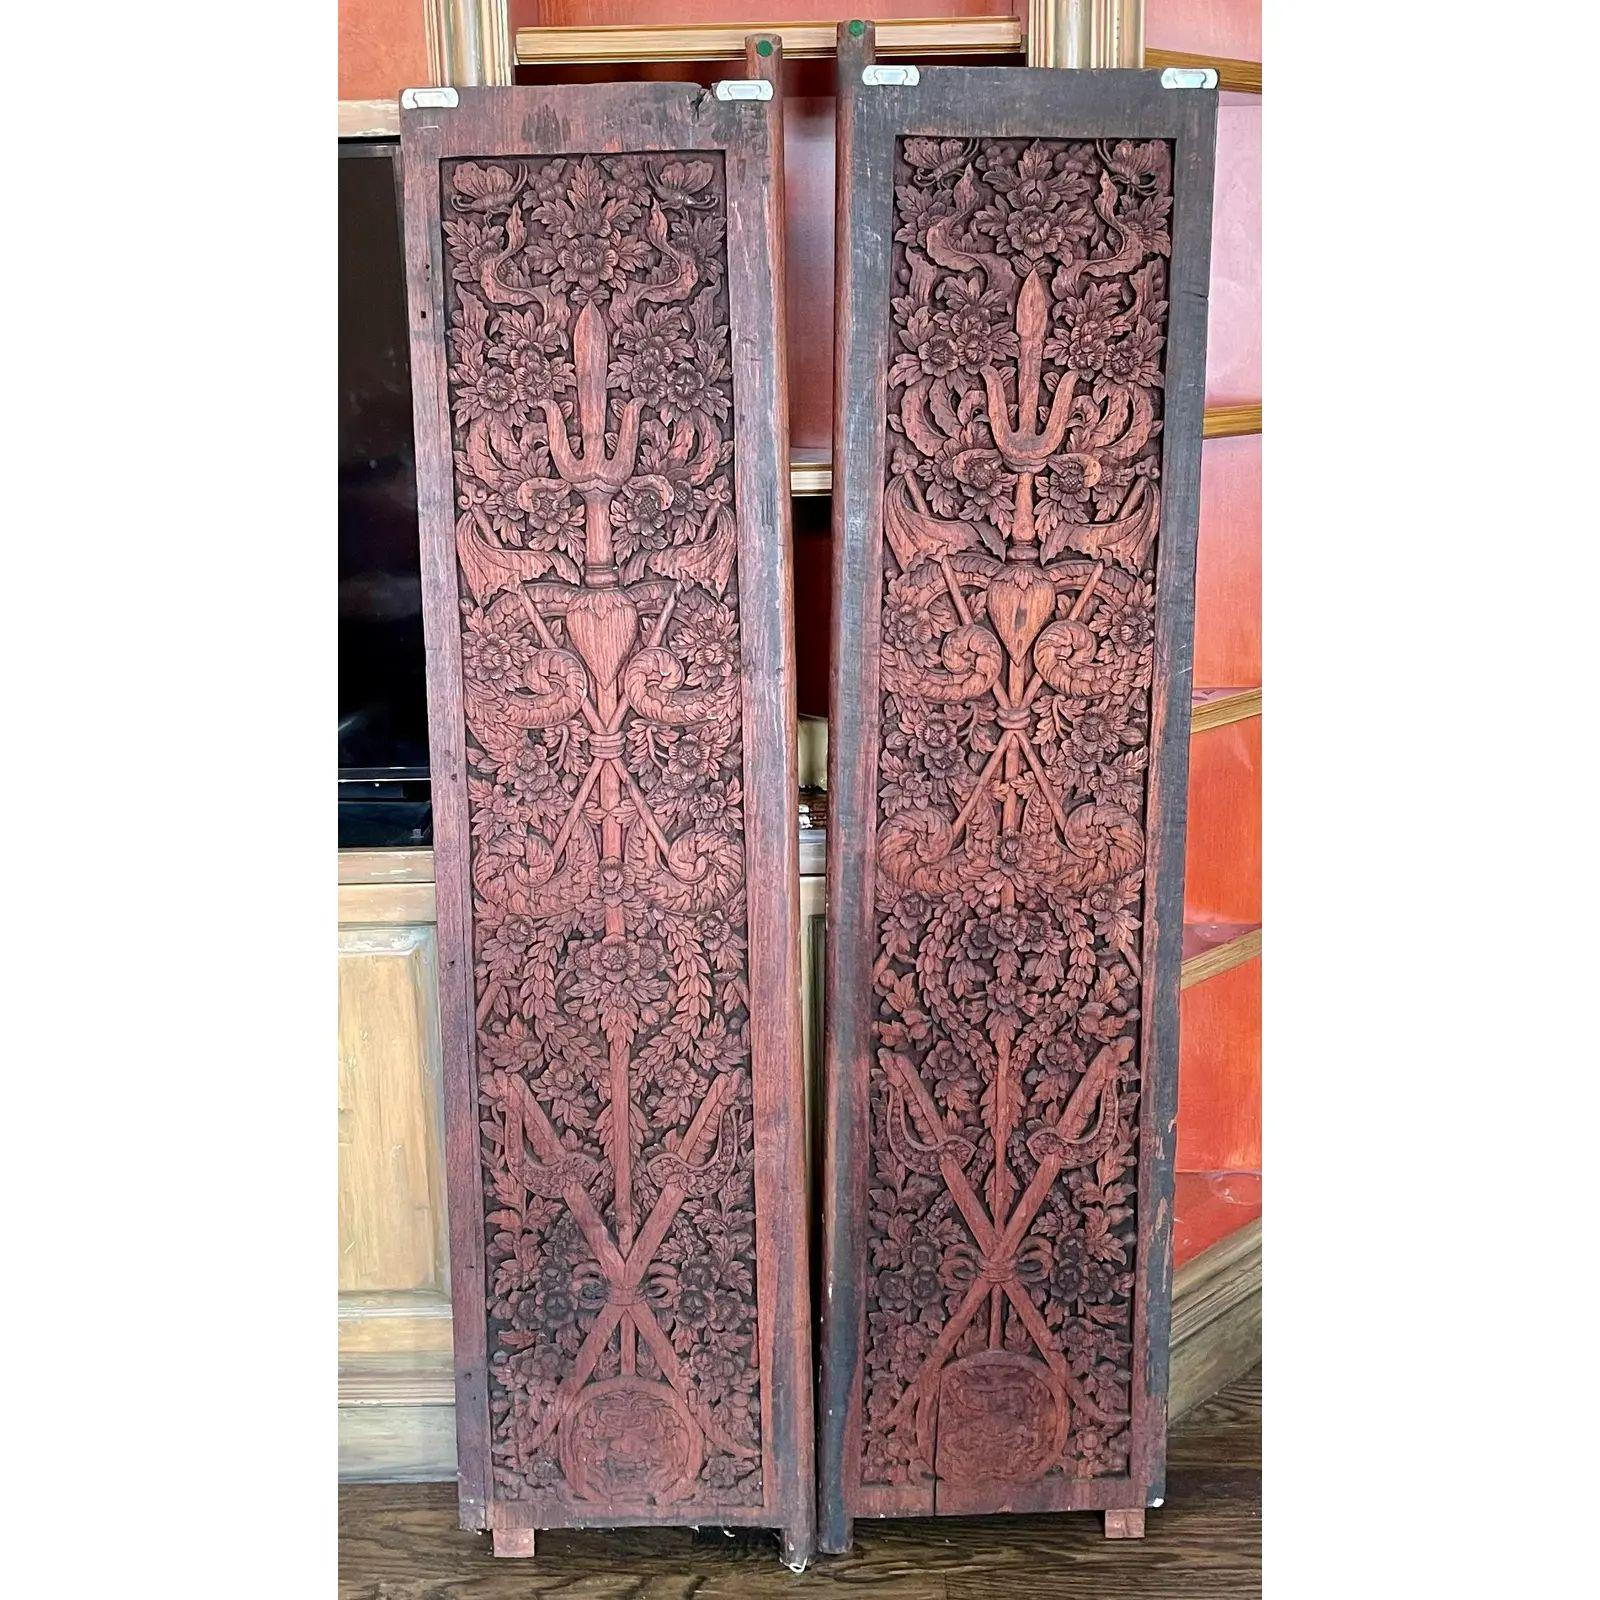 Antique Chinese Scenic Painted Carved Wood Doors. Jede Tür ist auf einer Seite wunderschön geschnitzt und auf der anderen Seite mit Kerzen im Mang-Ming-Stil bemalt.

Zusätzliche Informationen: 
MATERIALIEN: Farbe, Holz
Farbe: Rot
Zeitraum: 19.